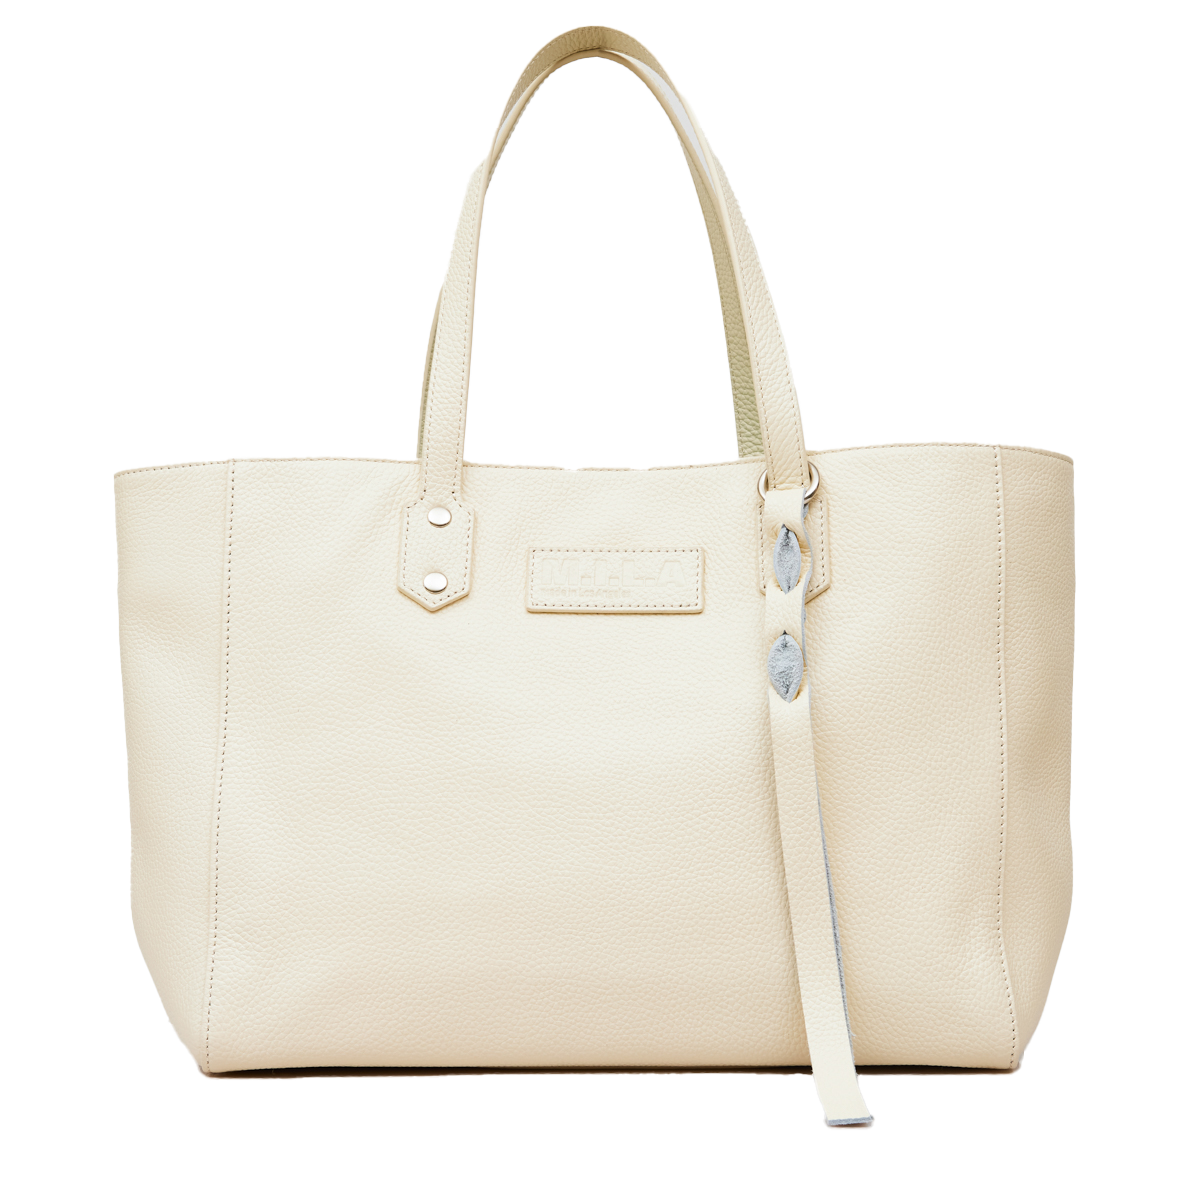 Buy Off White Handbags for Women Online